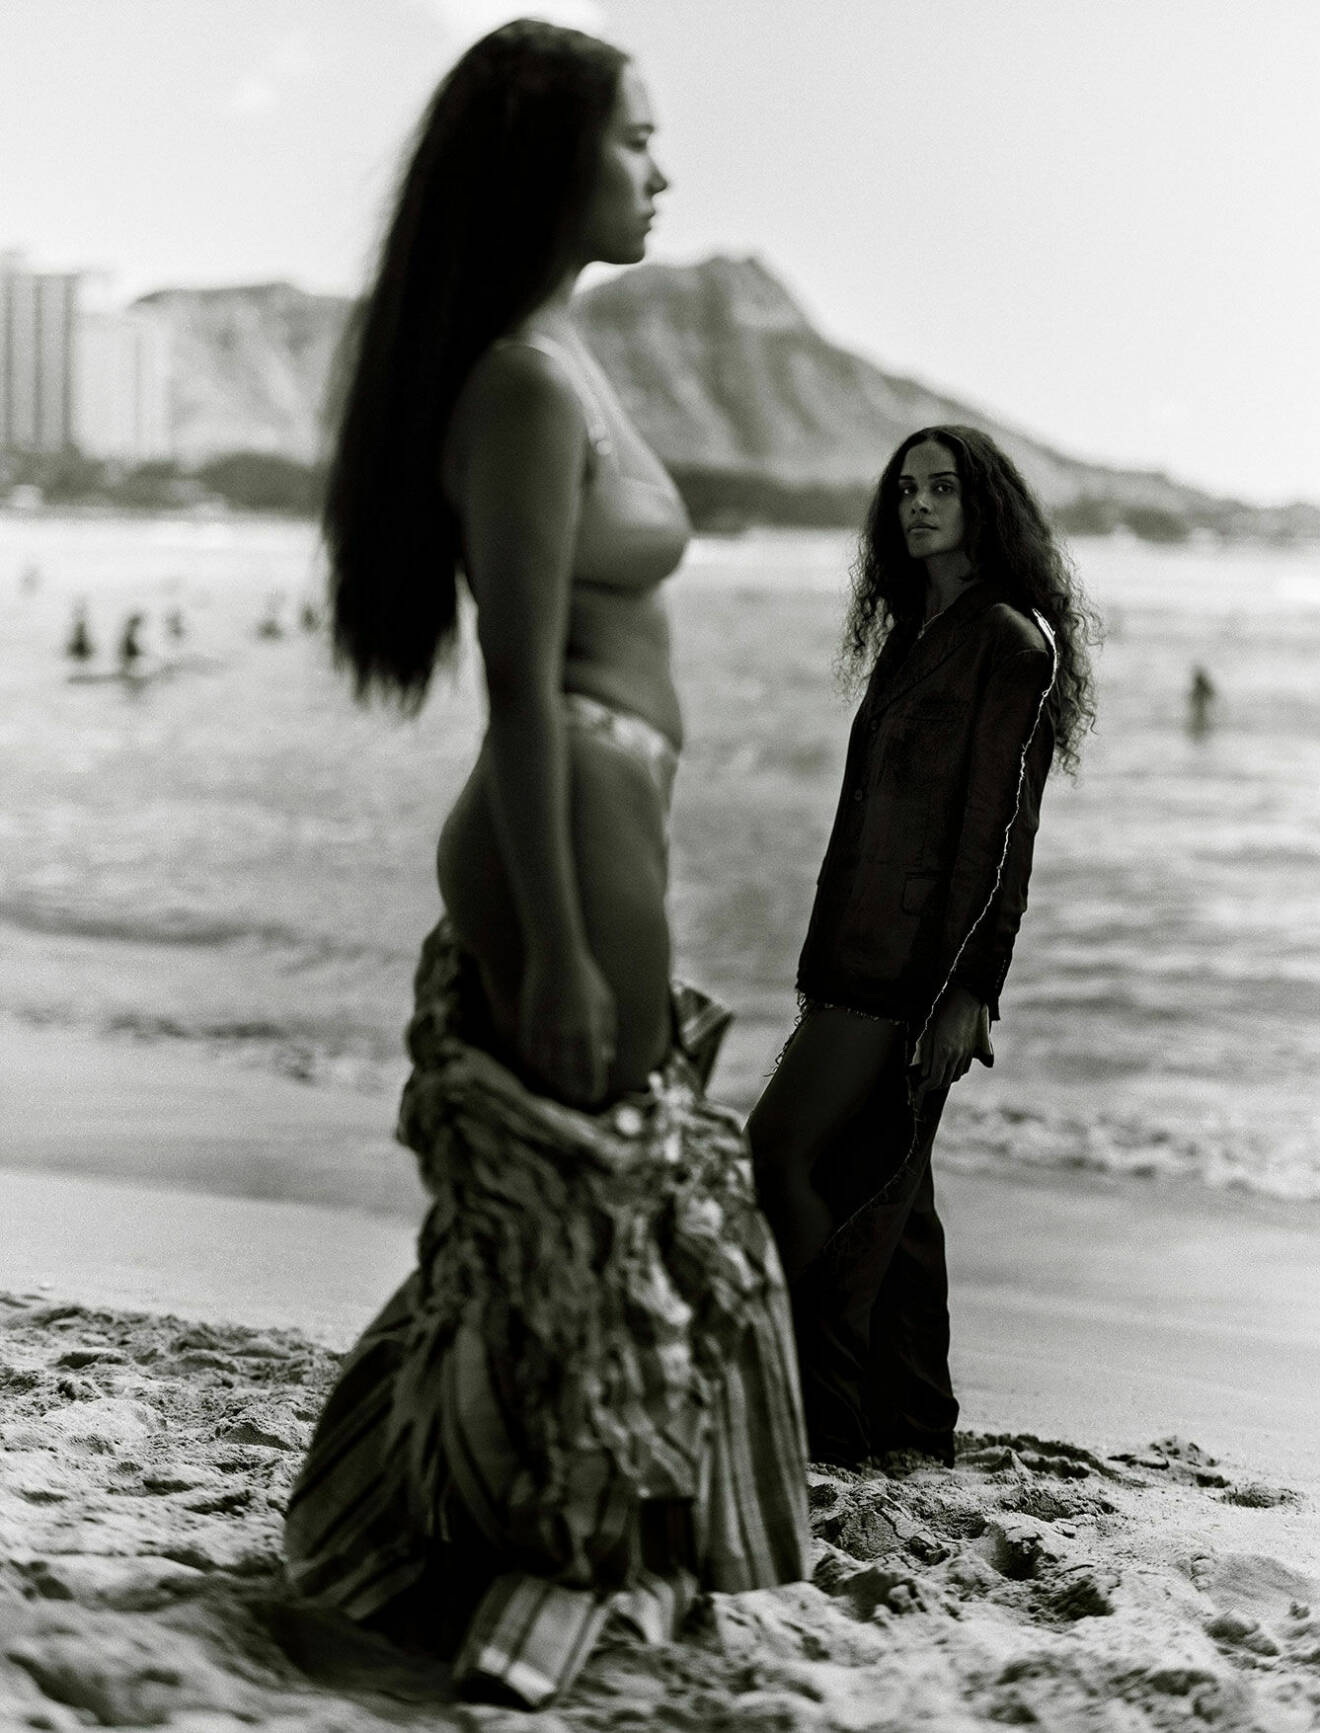 Naya har på sig bikini och rutig jacka. Aloha bär kavaj och kjol. Båda står på stranden.